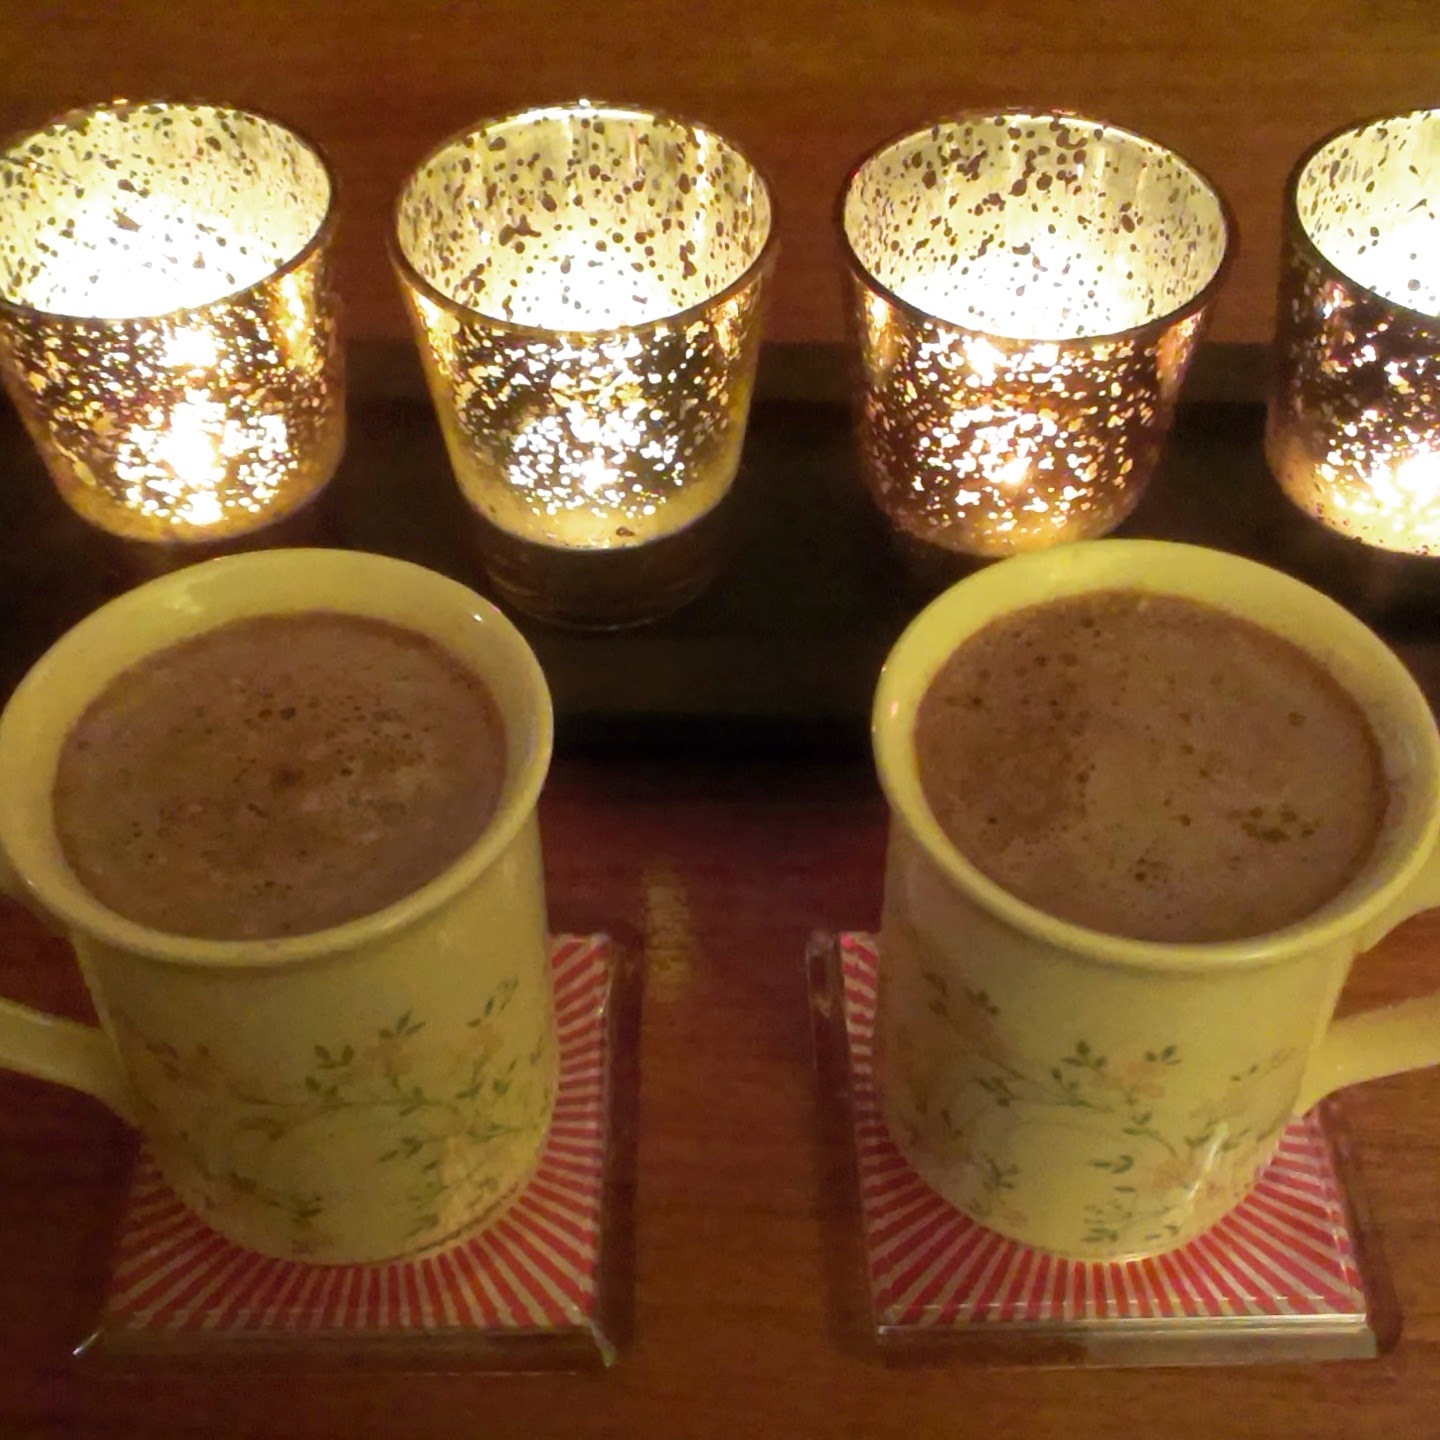 11pm - hot chocolate